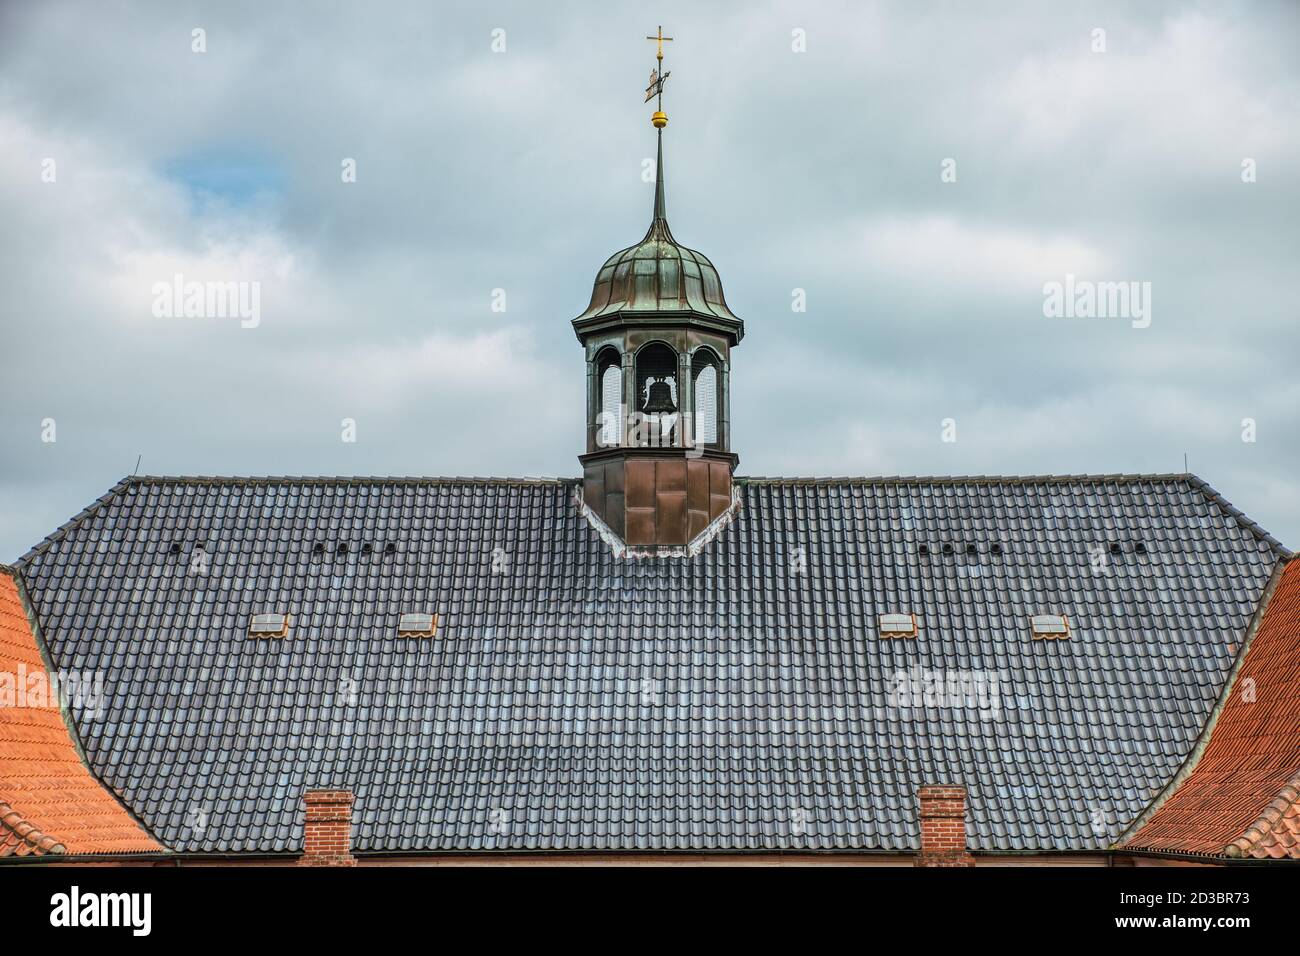 Evangelisch-lutherische Kirche Dachfassade mit Glockenturm Aus der Mitte in Kastellet spähend vermitteln religiöse Anbetung Und Godly Konzept Stockfoto